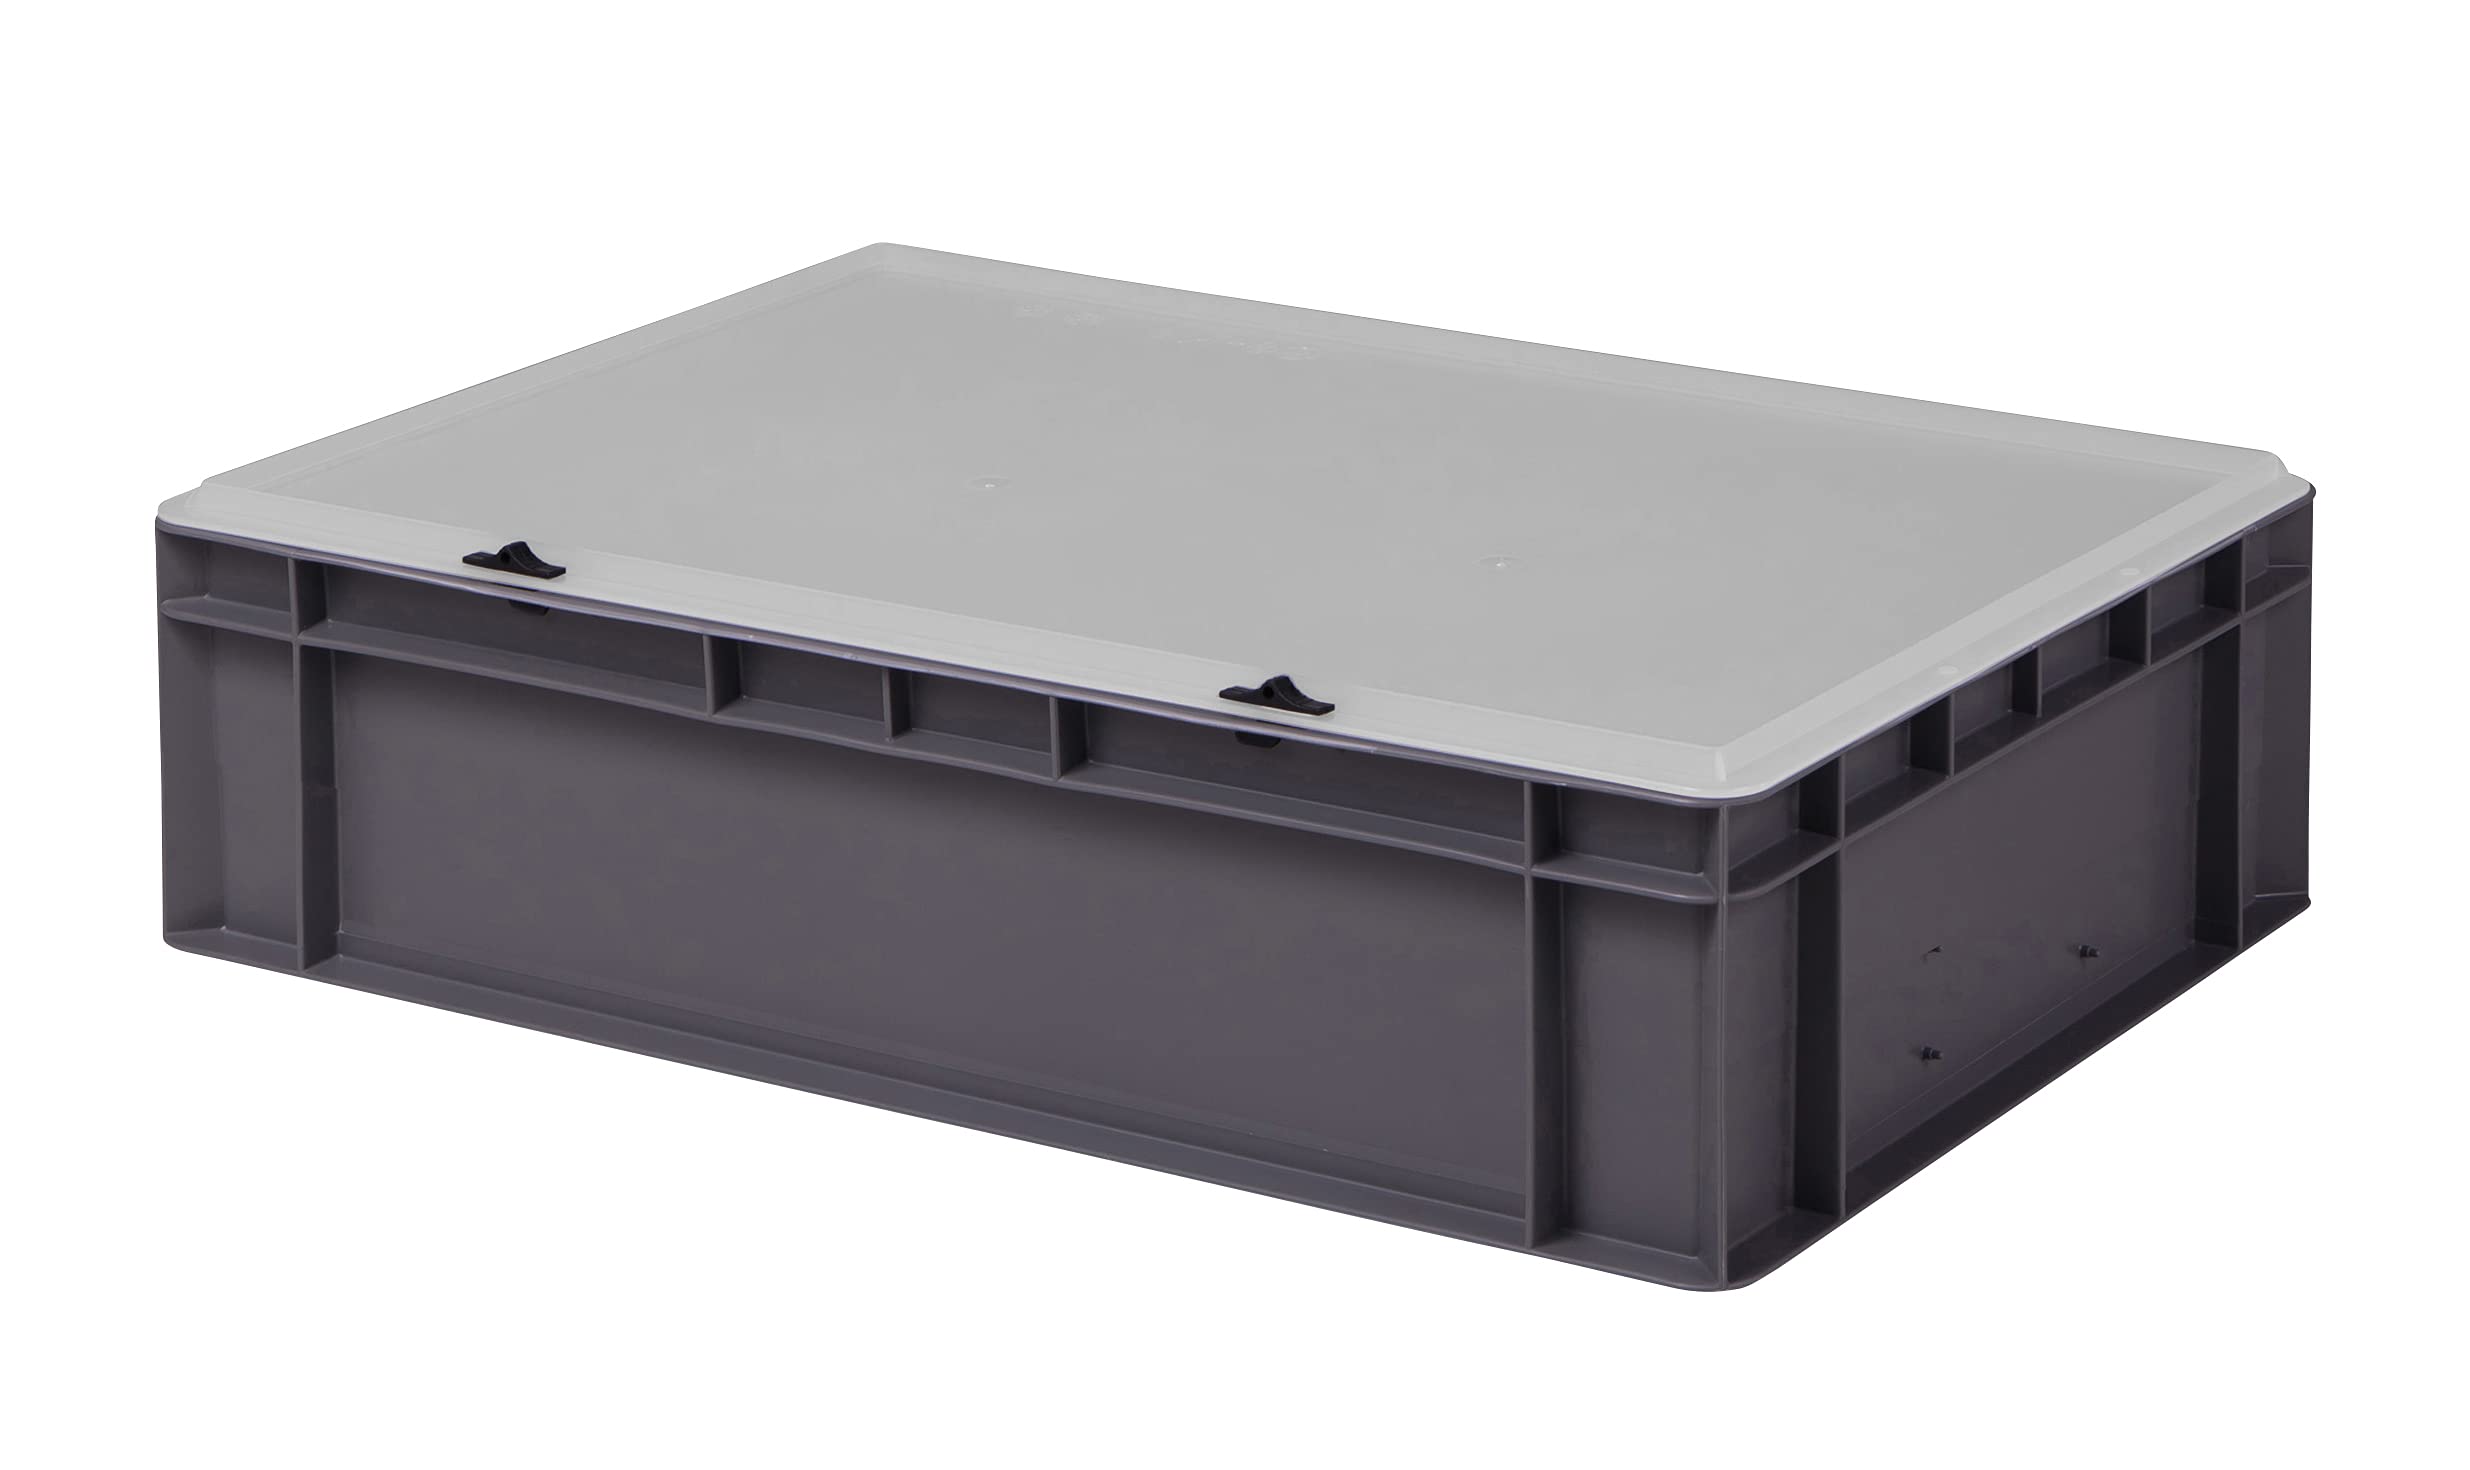 1a-TopStore Design Eurobox Stapelbox Lagerbehälter Kunststoffbox in 5 Farben und 16 Größen mit transparentem Deckel (matt) (grau, 60x40x15 cm)